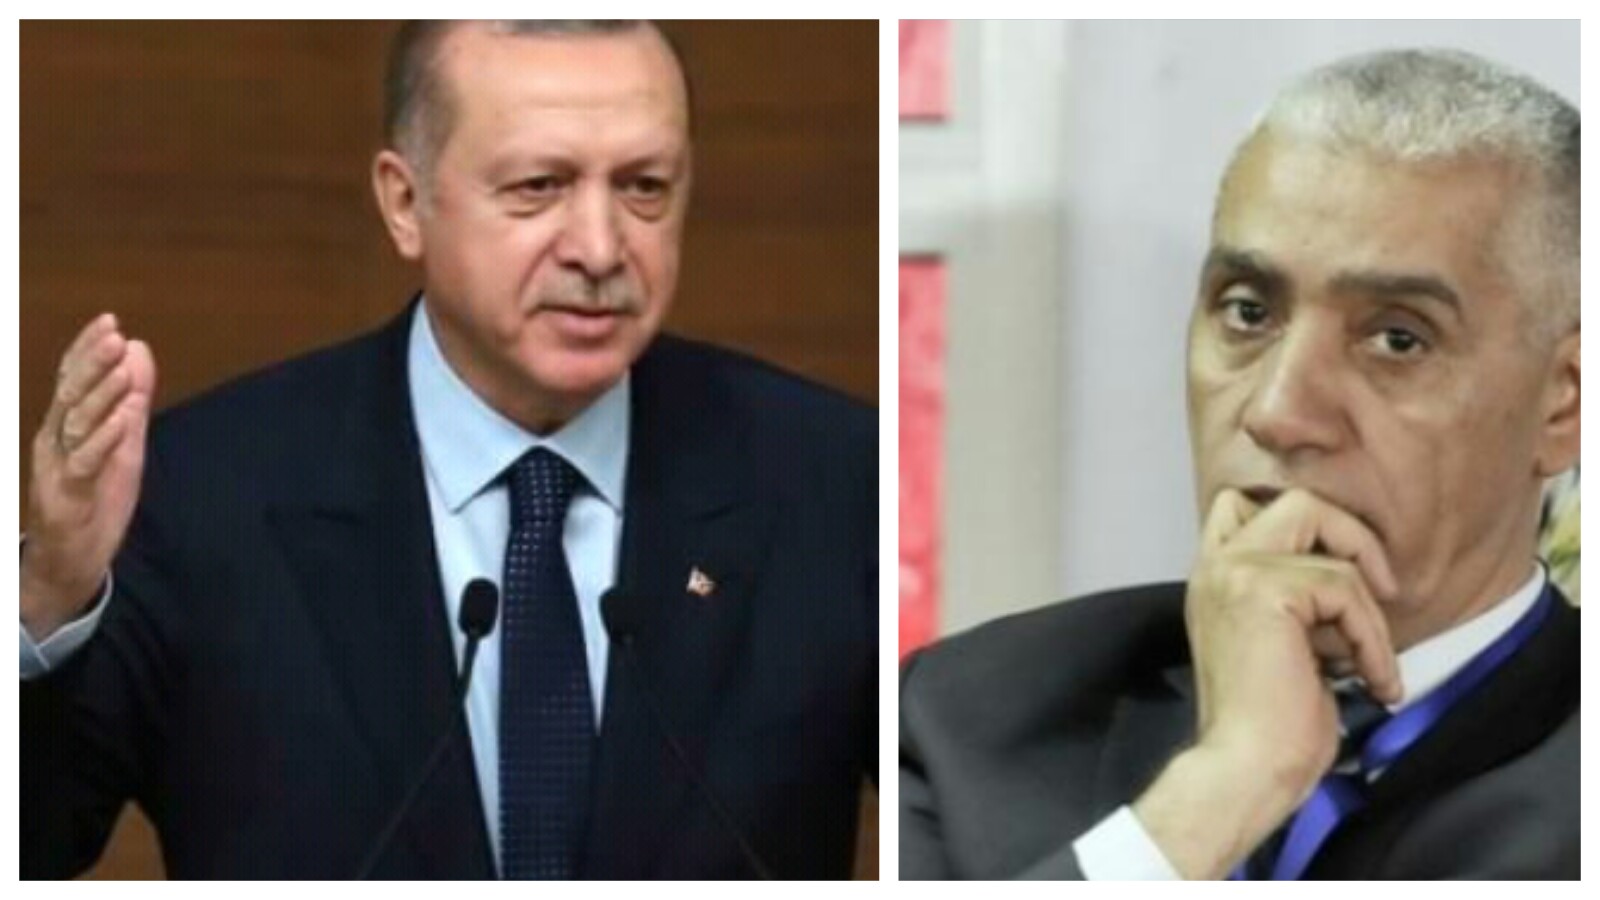 بعد تصريحاته المسيئة للرئيس التركي أردوغان، مطالبة شعبية باستقالة الطلبي العلمي من الحكومة المغربية